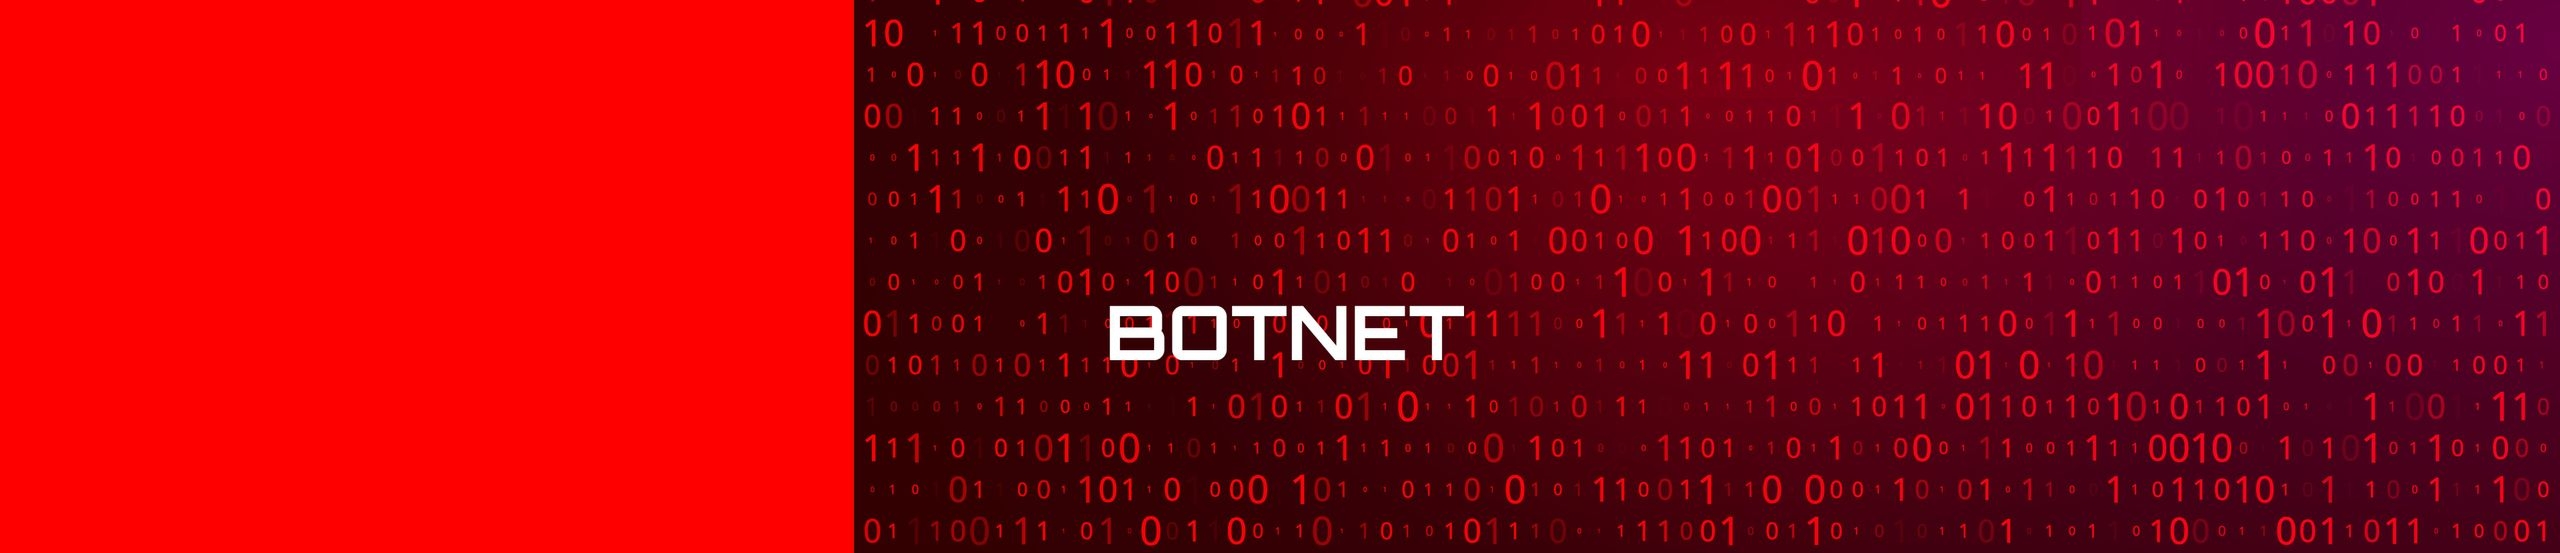 Digitale Ziffernfolgen eines Binärcodes, der sich über die gesamte Bildfläche erstreckt, wobei mittig die Bezeichnung „BOTNET“ steht.